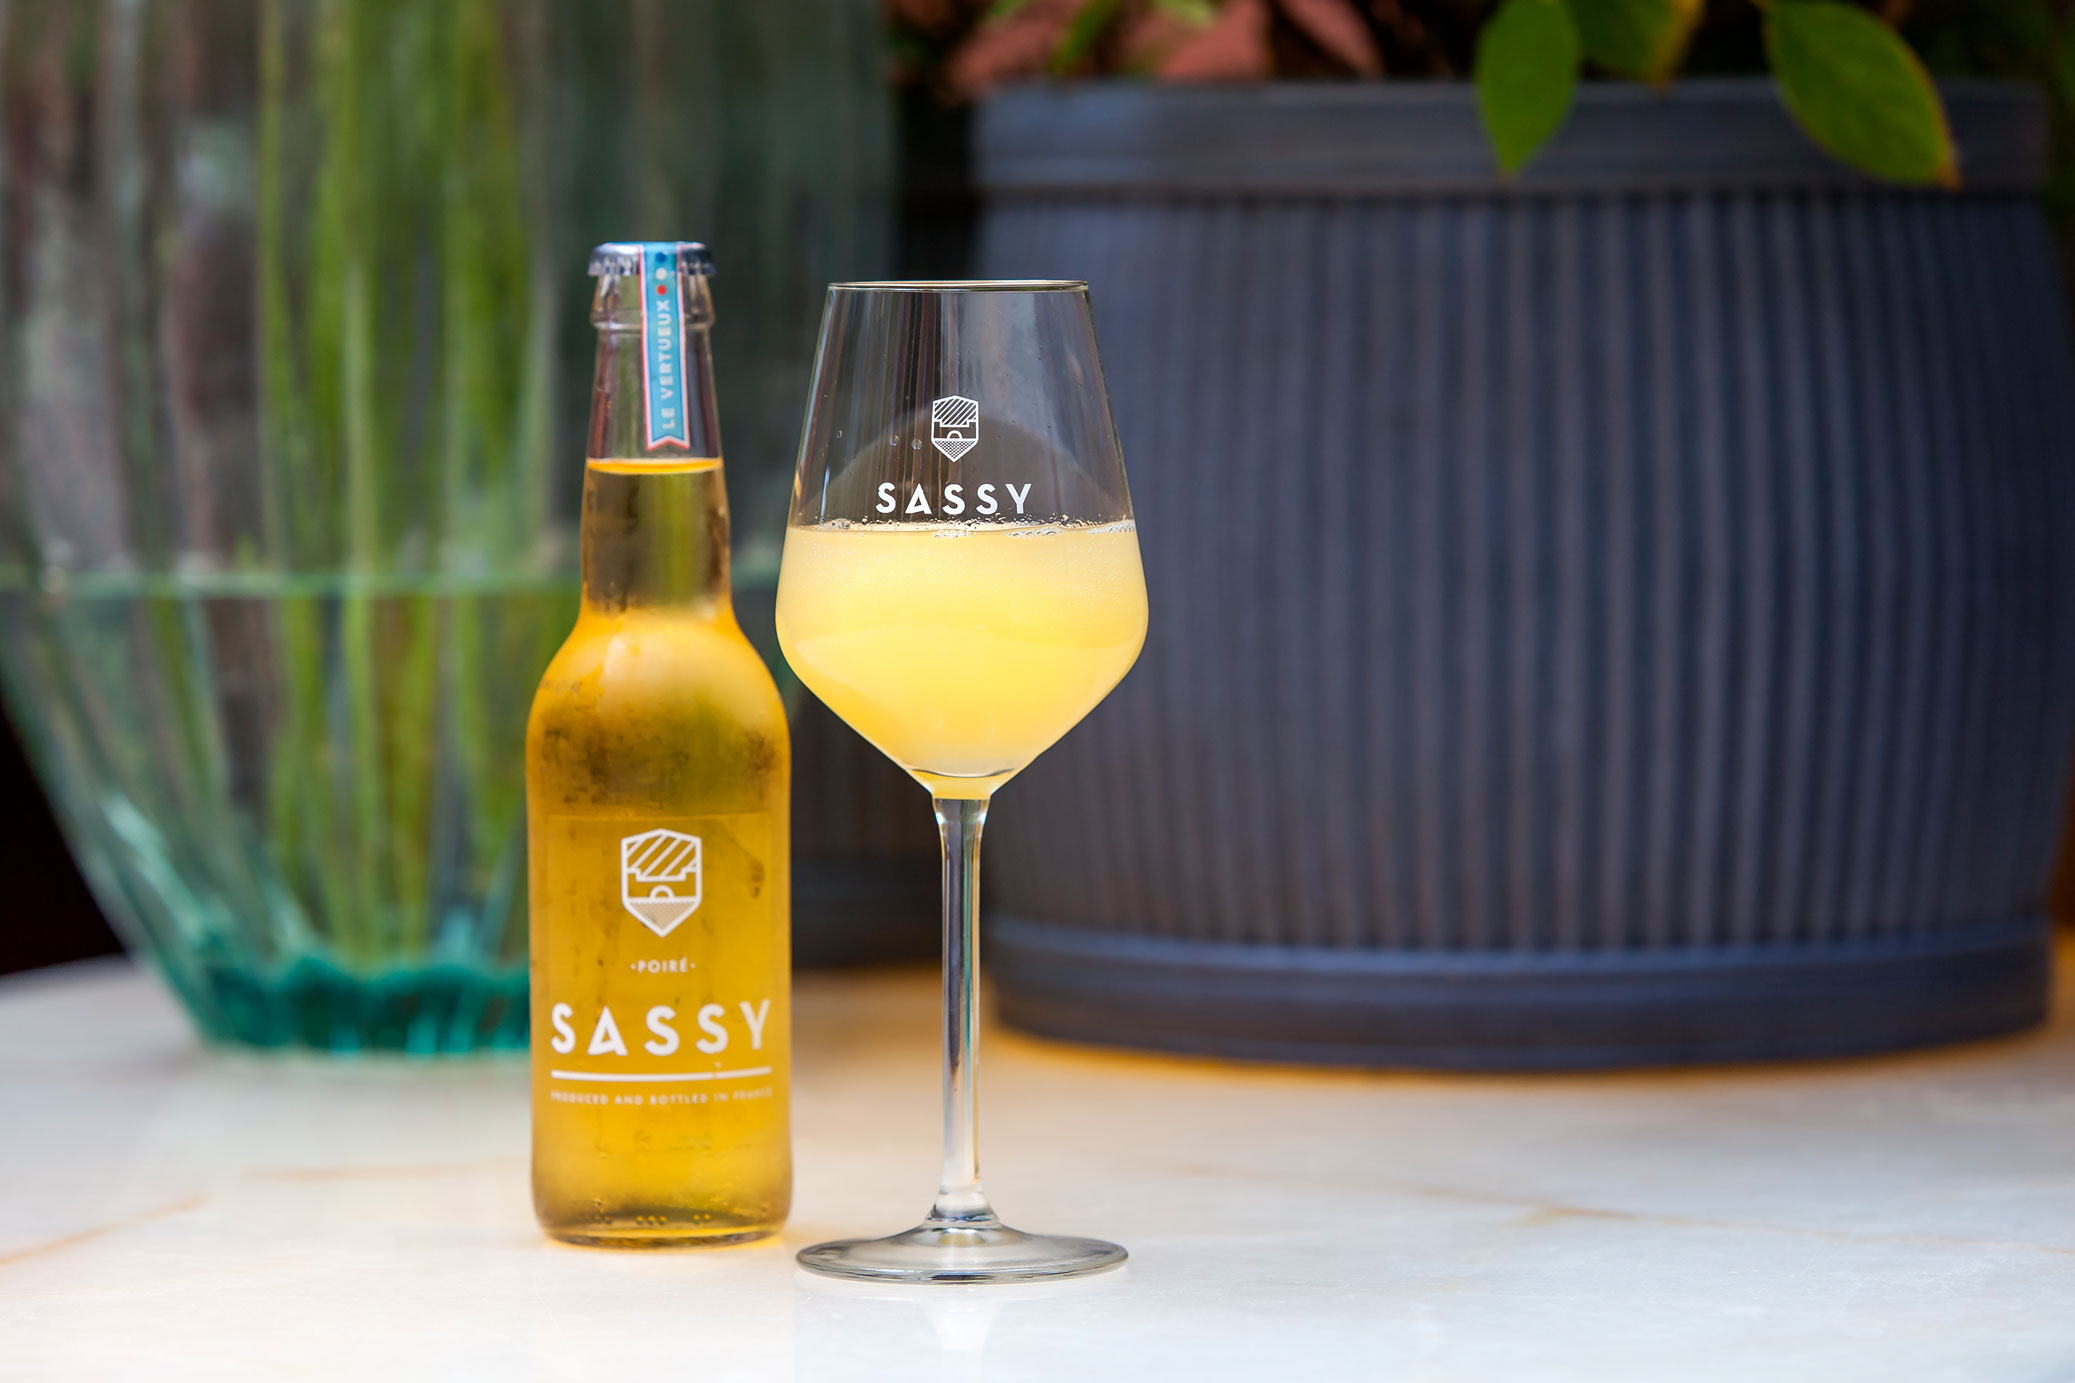 Sassy Cidre Apfelwein